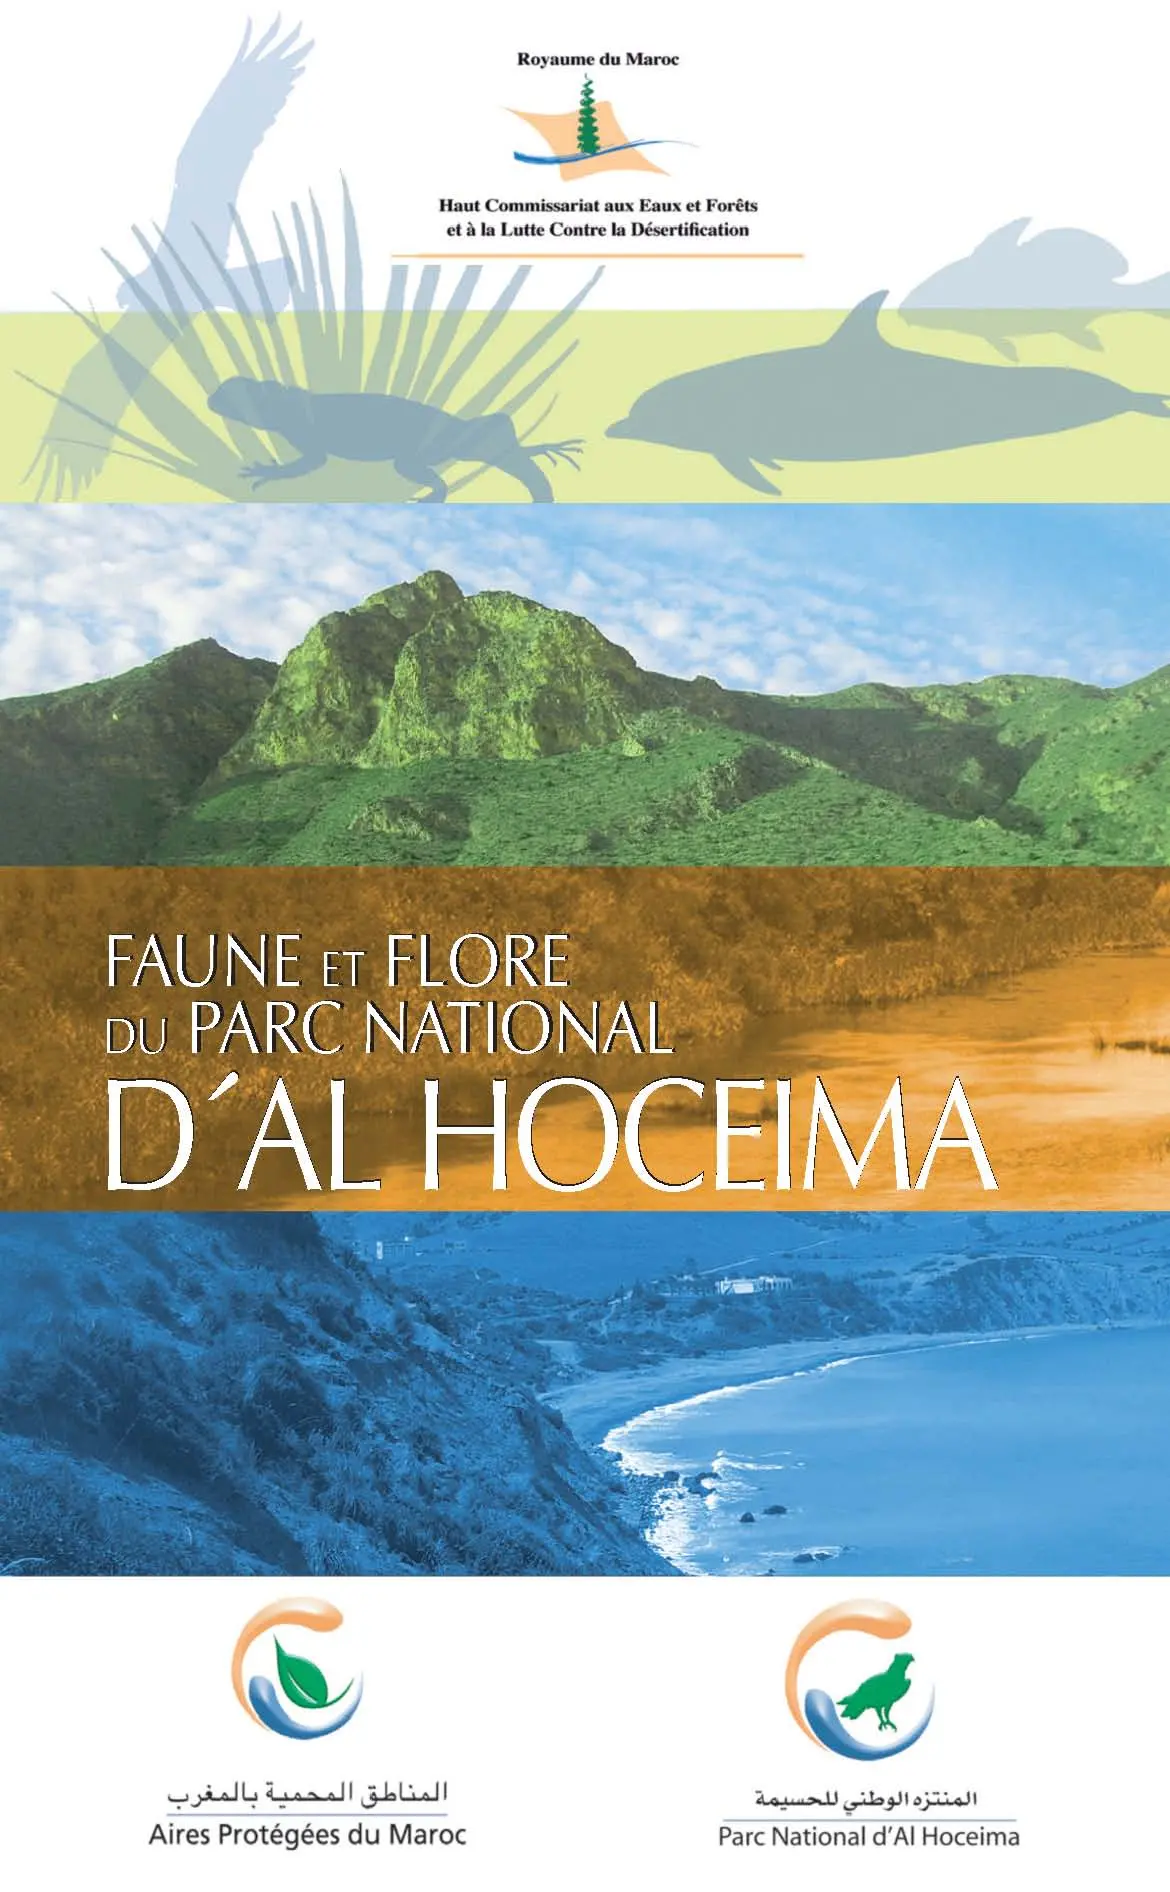 Guide de faune et flora du parc national d'Al Hoceima